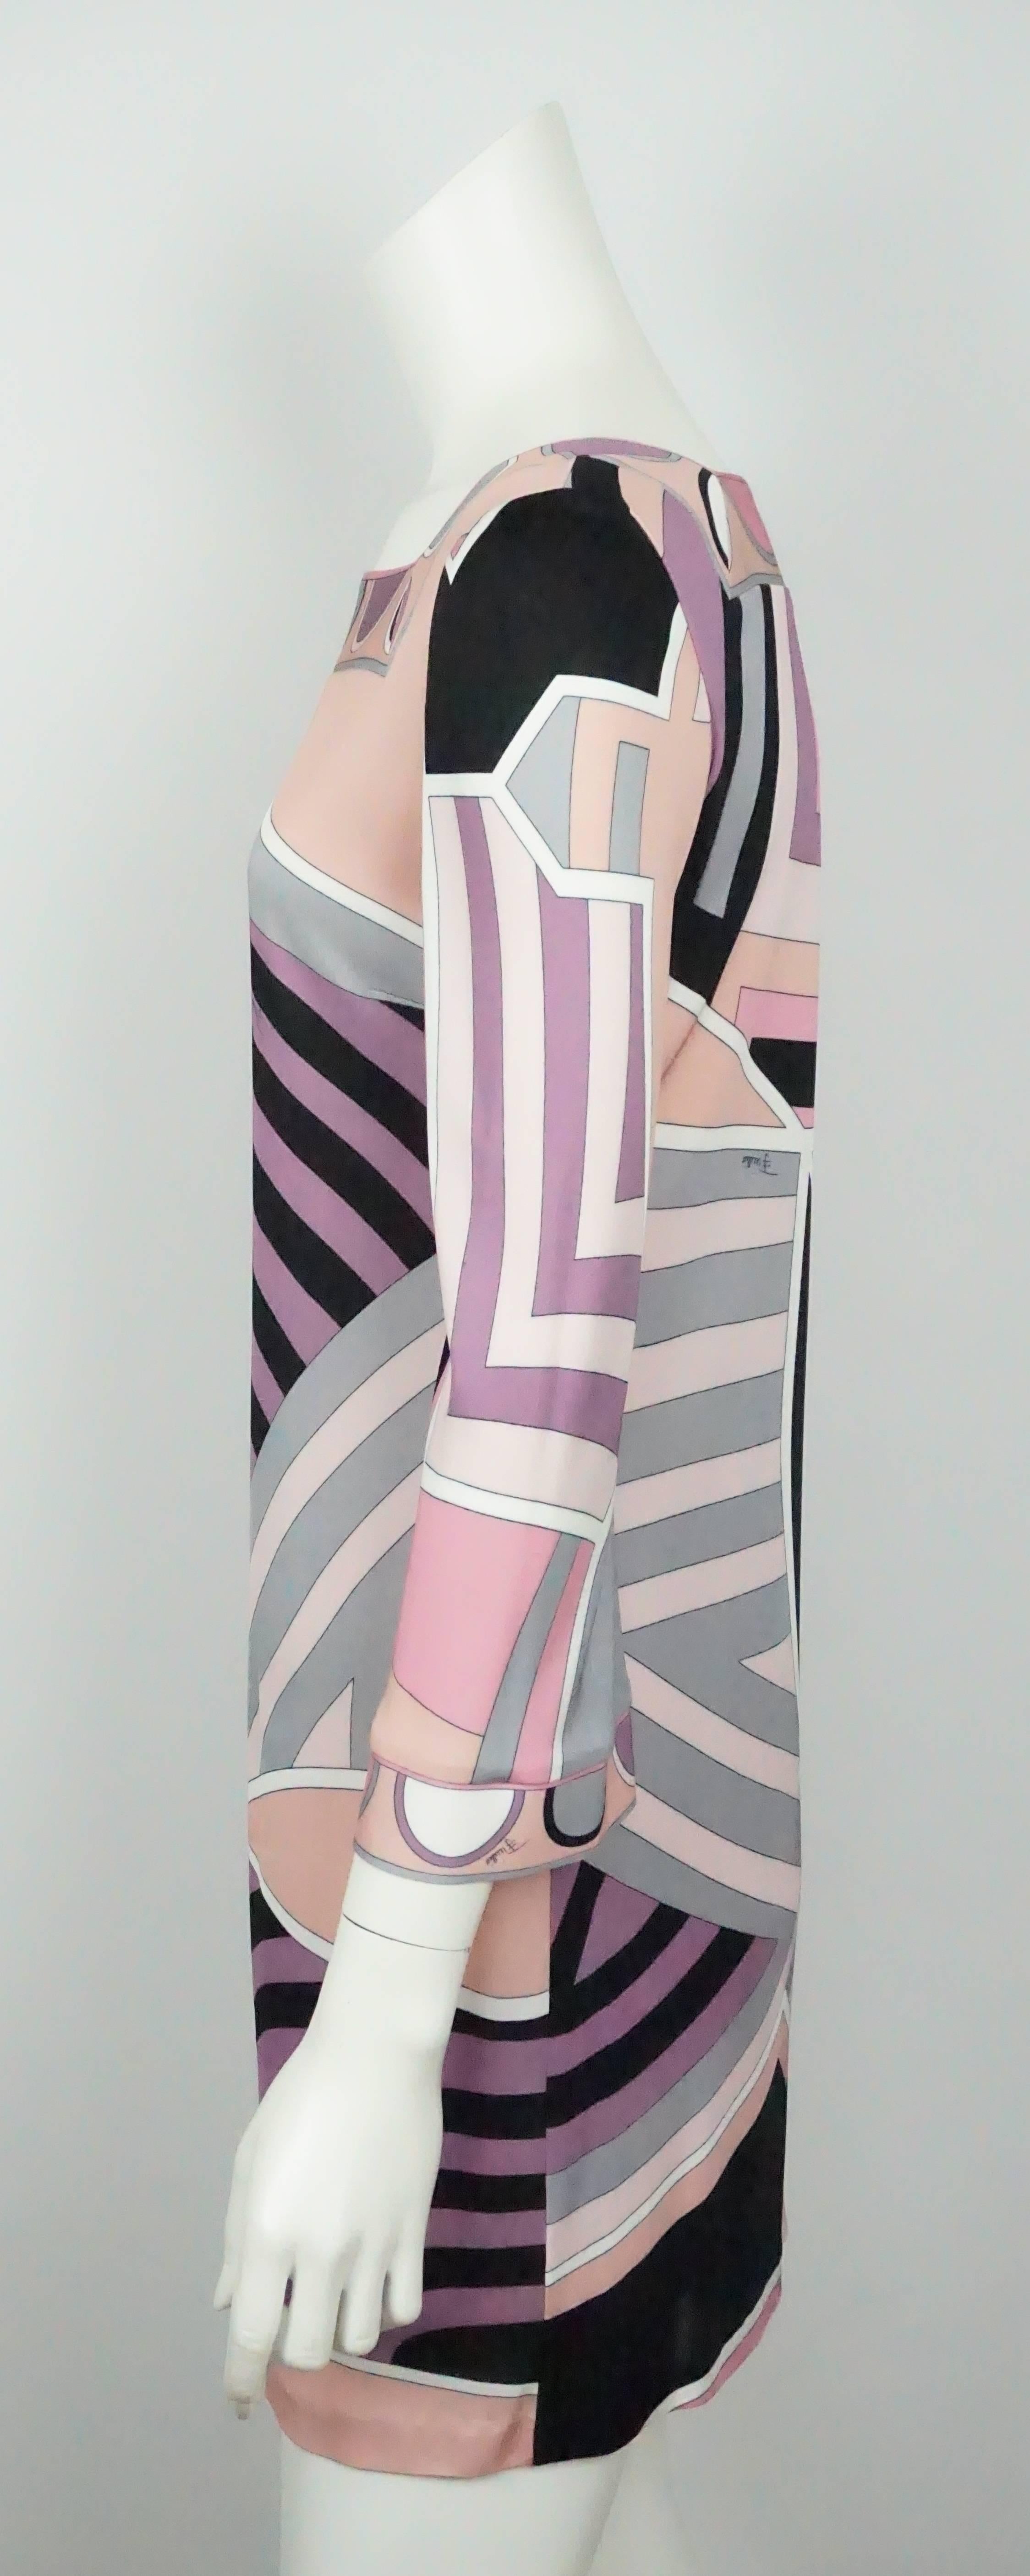 Emilio Pucci - Robe L/S imprimée rose, noire et terre - 6   Cette magnifique robe en viscose imprimée est en excellent état. La robe commence par un col carré et est entourée d'un motif circulaire. Les poignets des manches sont légèrement plus